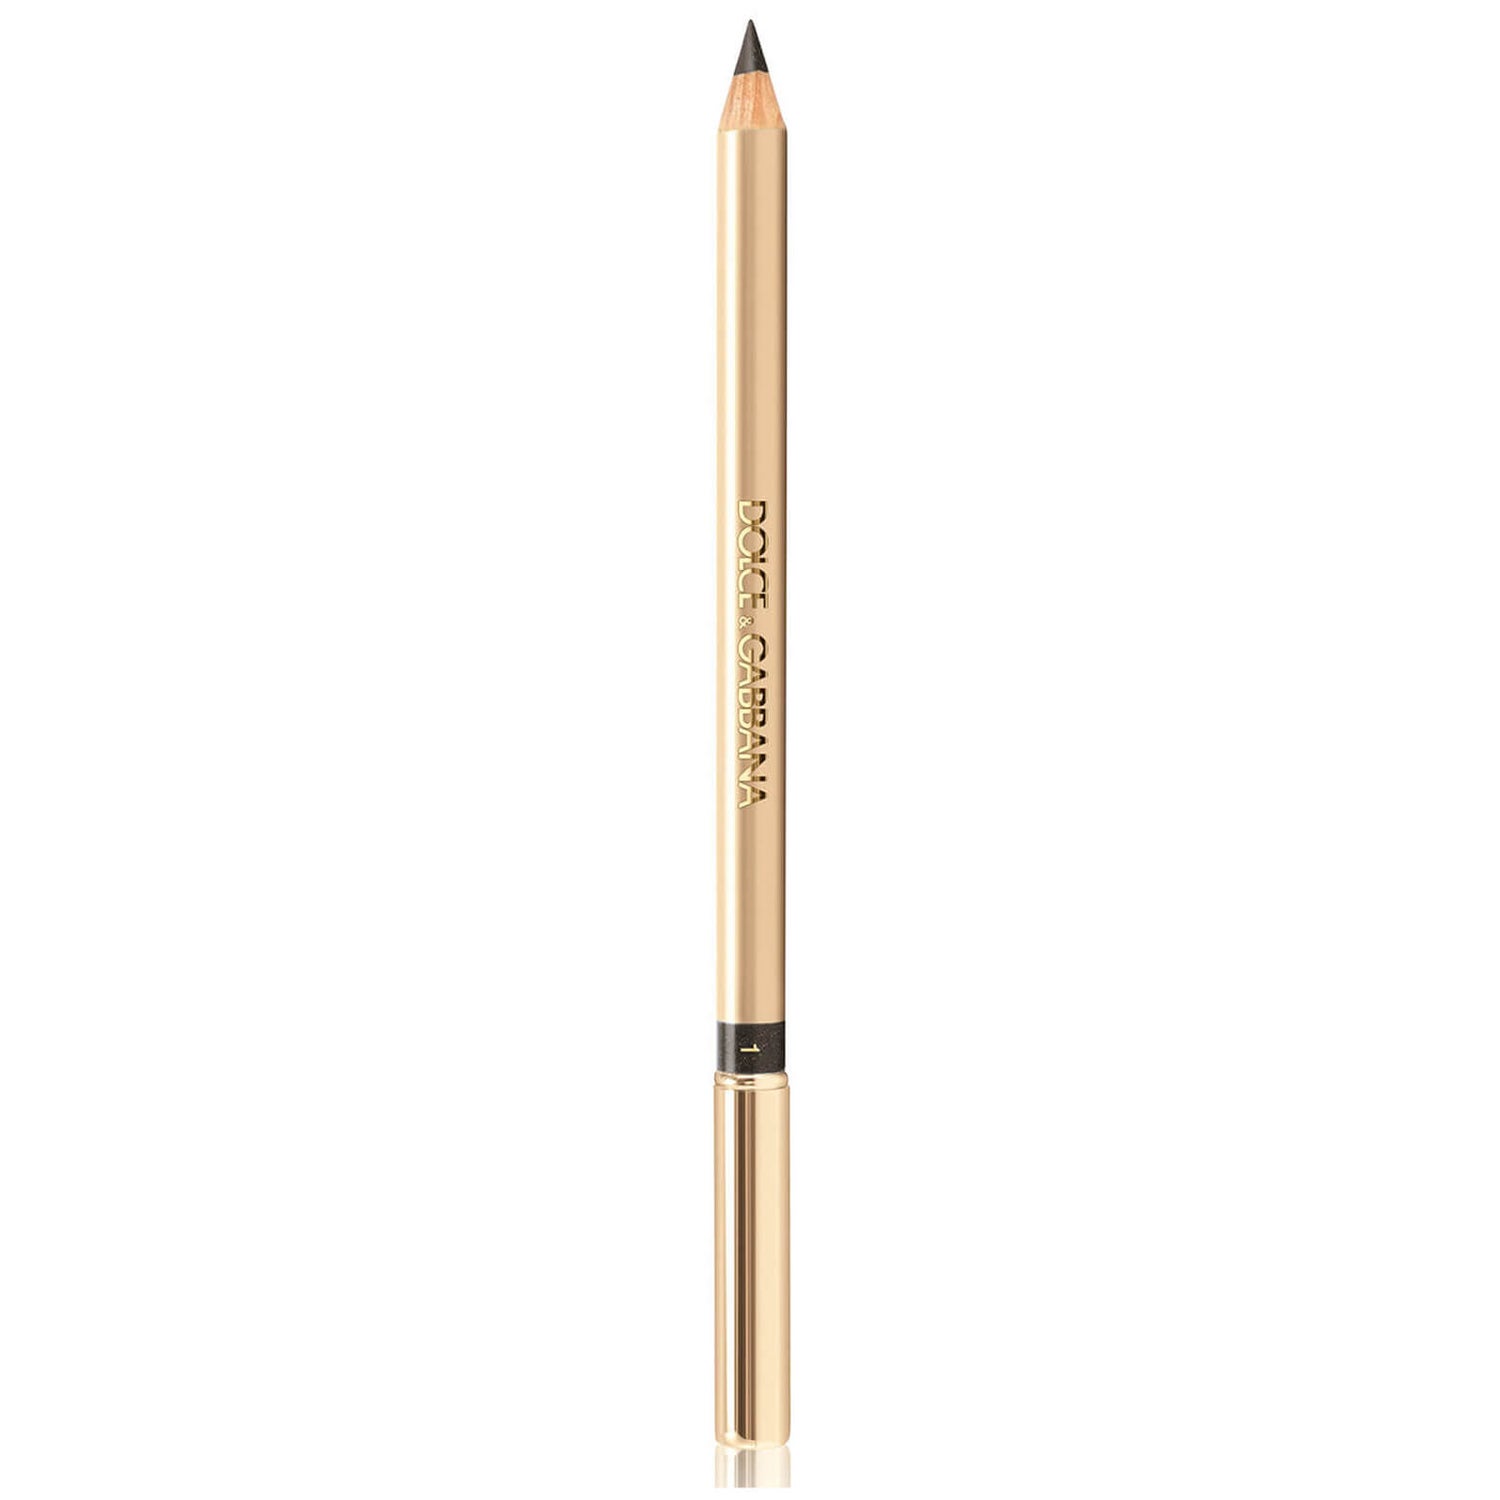 Dolce&Gabbana Eyeliner Pencil 1.55g (Various Shades)